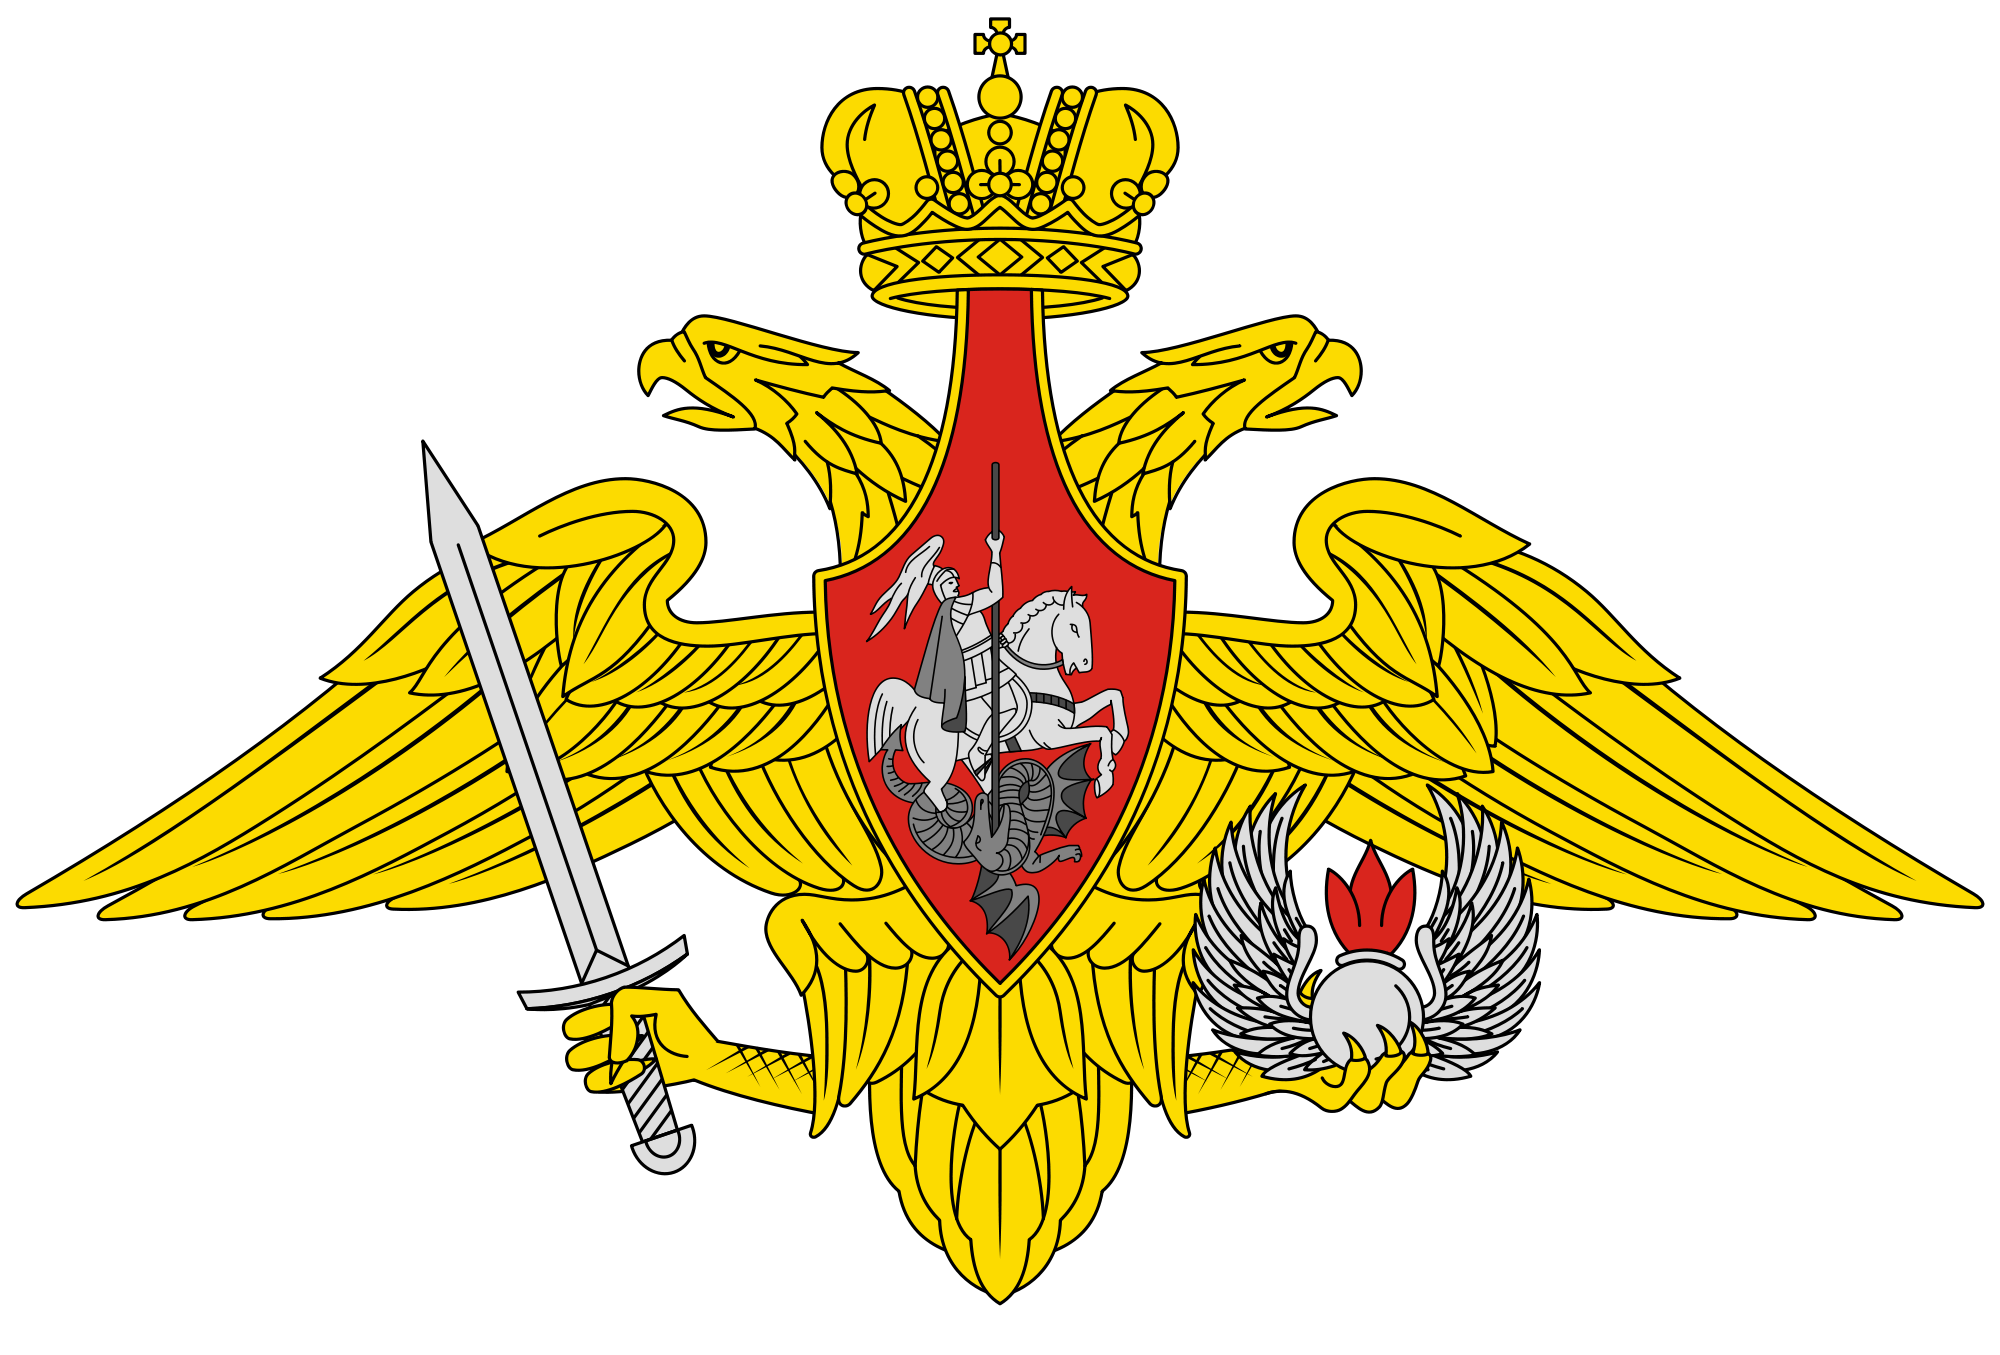 俄羅斯聯邦空降兵部隊軍徽